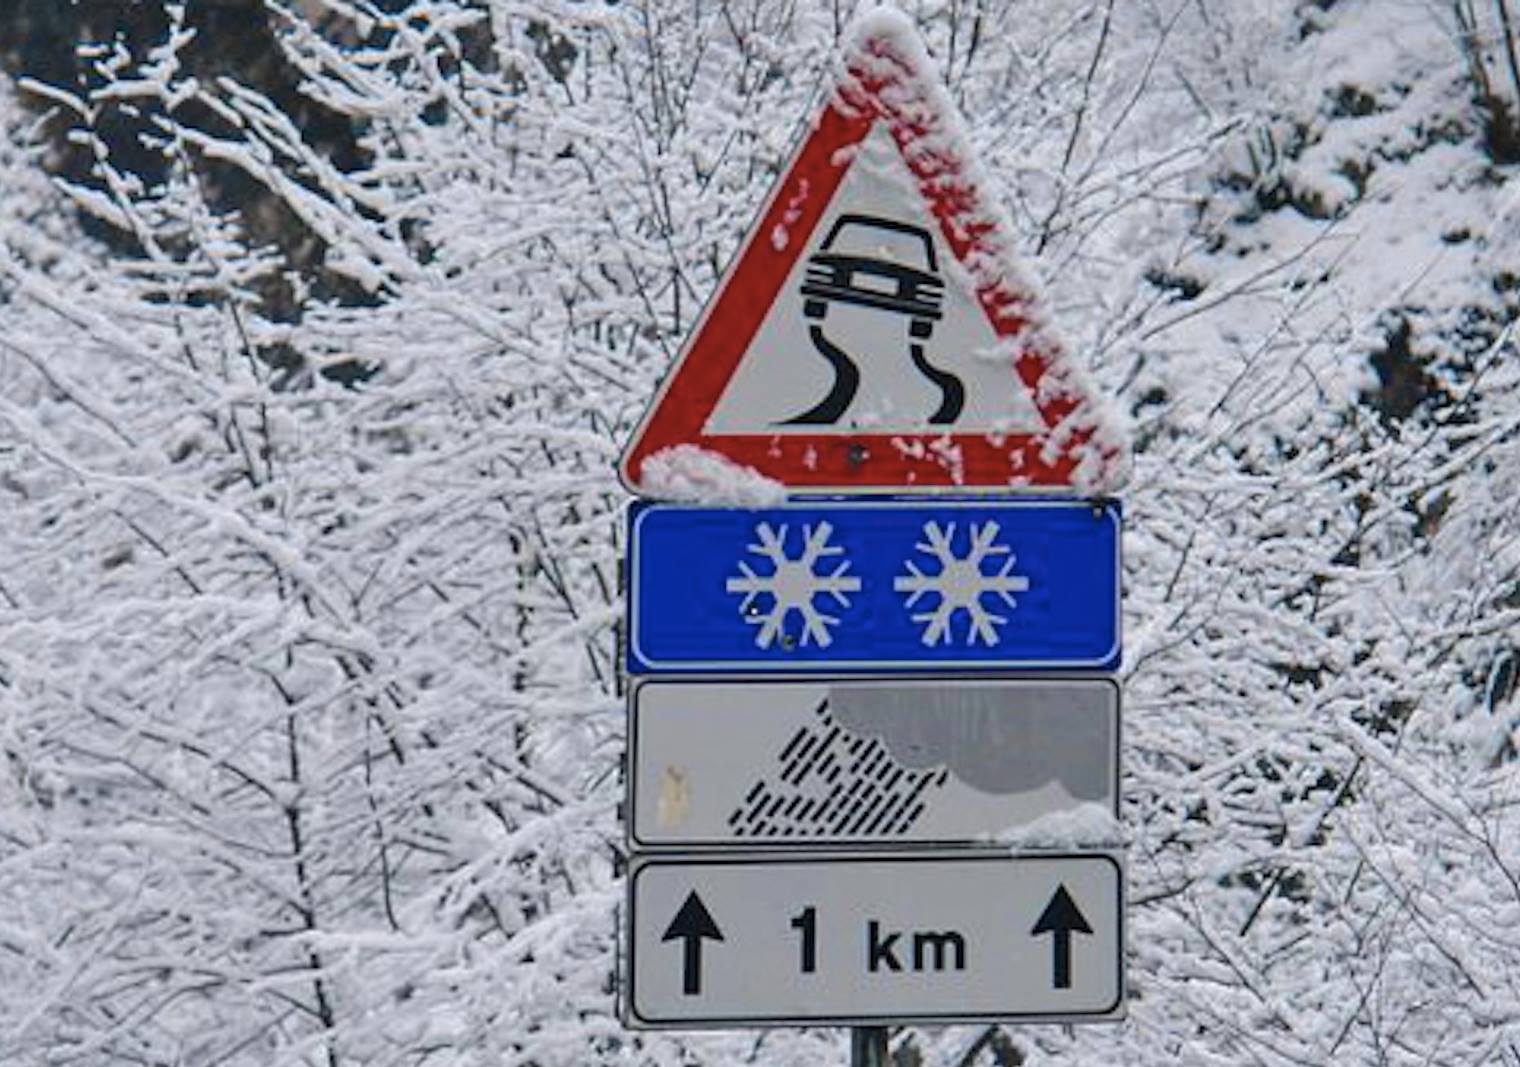 Neve in provincia di Lucca, prudenza sulle strade